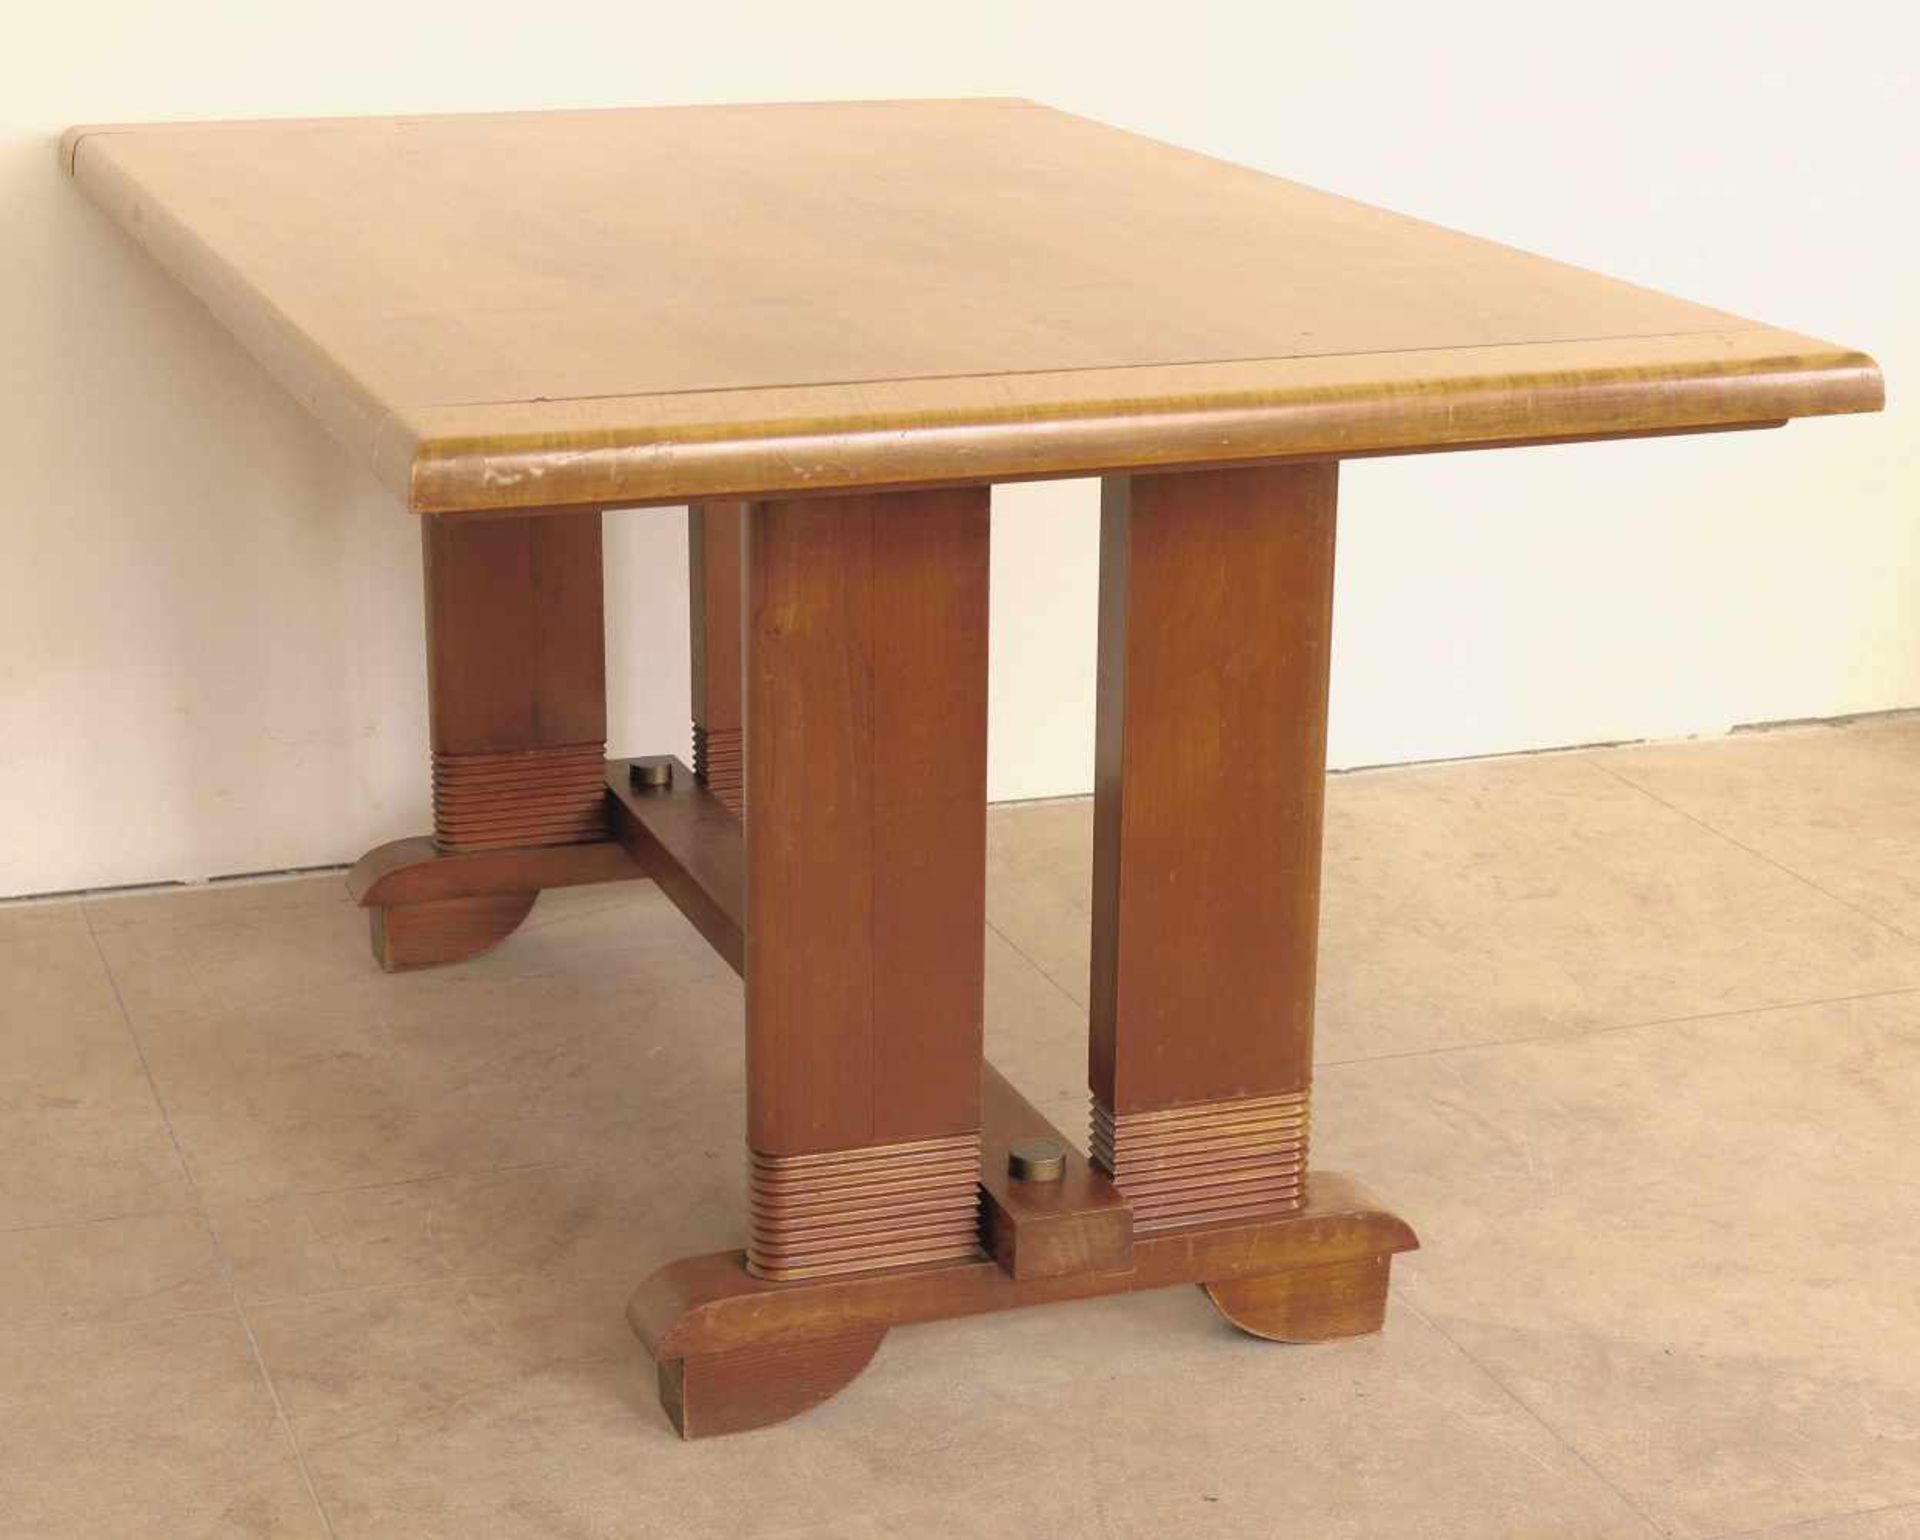 Tisch Art Déco Belgien. Entwurf und Ausführung 1920er Jahre. Holz und Messing. 75 x 150 x 95cm.